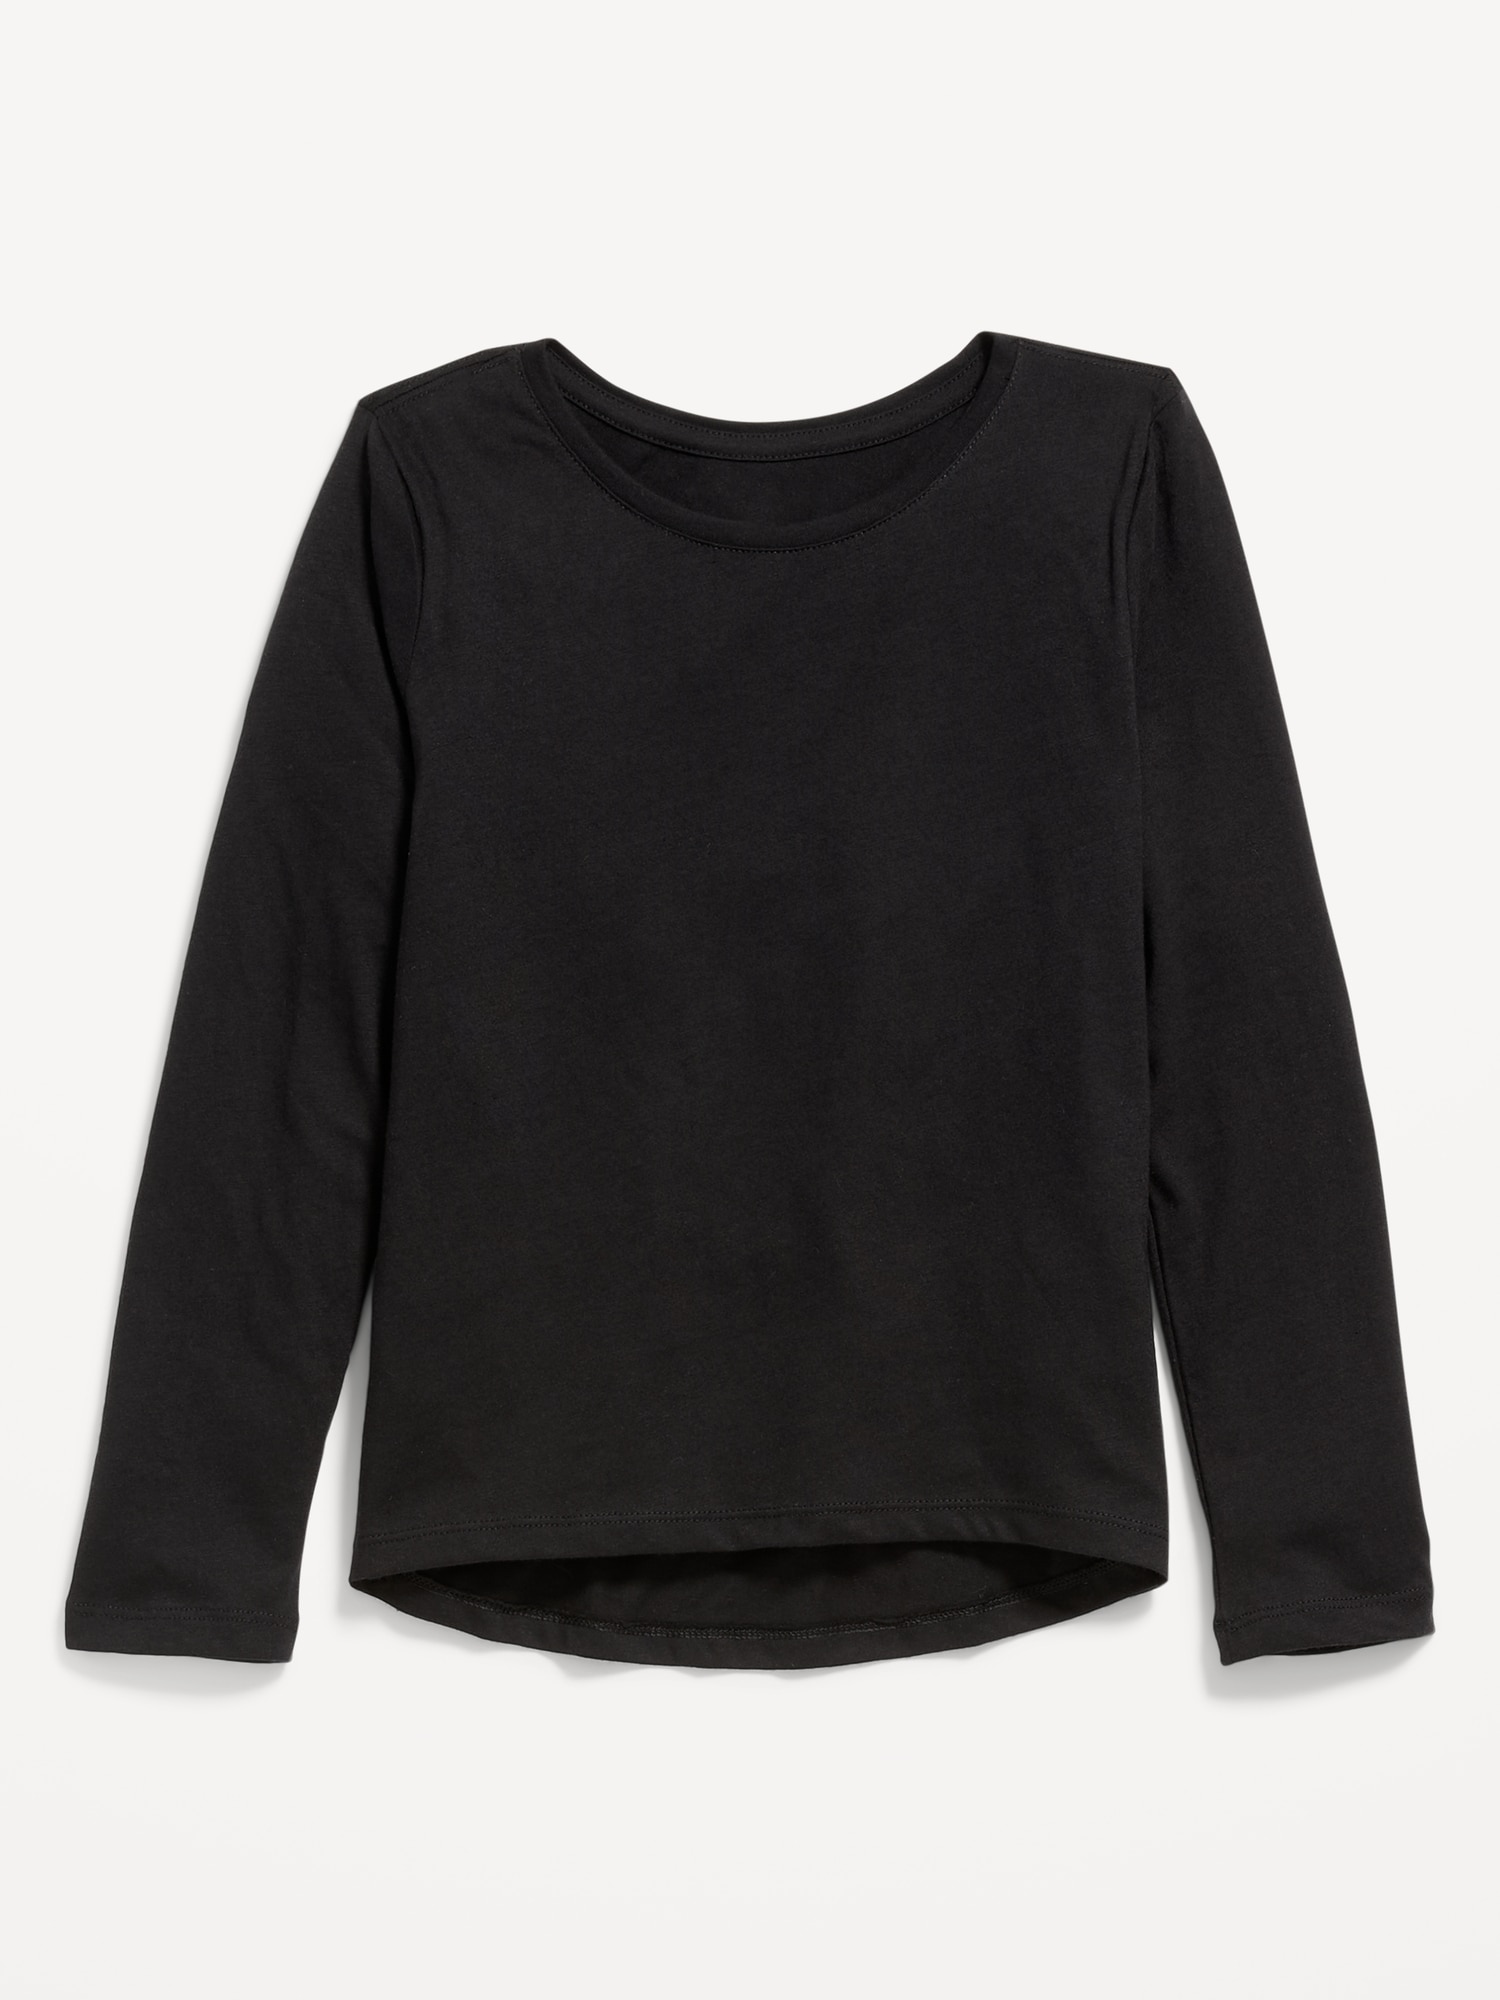 Softest Long-Sleeve T-Shirt for Girls